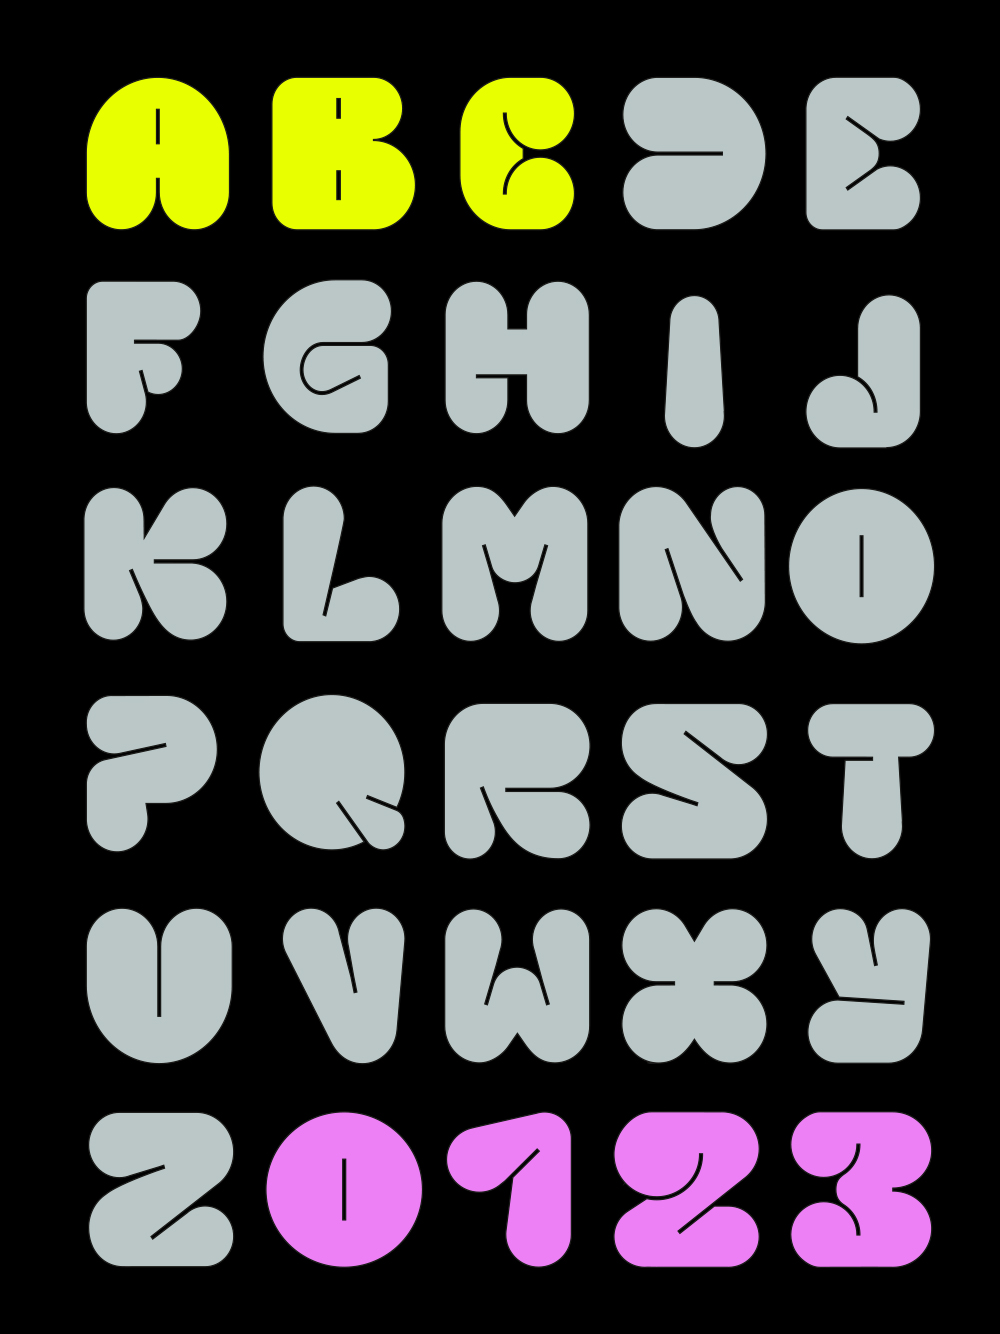 RIOT NOW! Buchstaben A-Z in Großbuchstaben und Zahlen 0,1, 2, 3,  in 6 Reihen in gelb, grau und pink auf schwarzem Hintergrund 